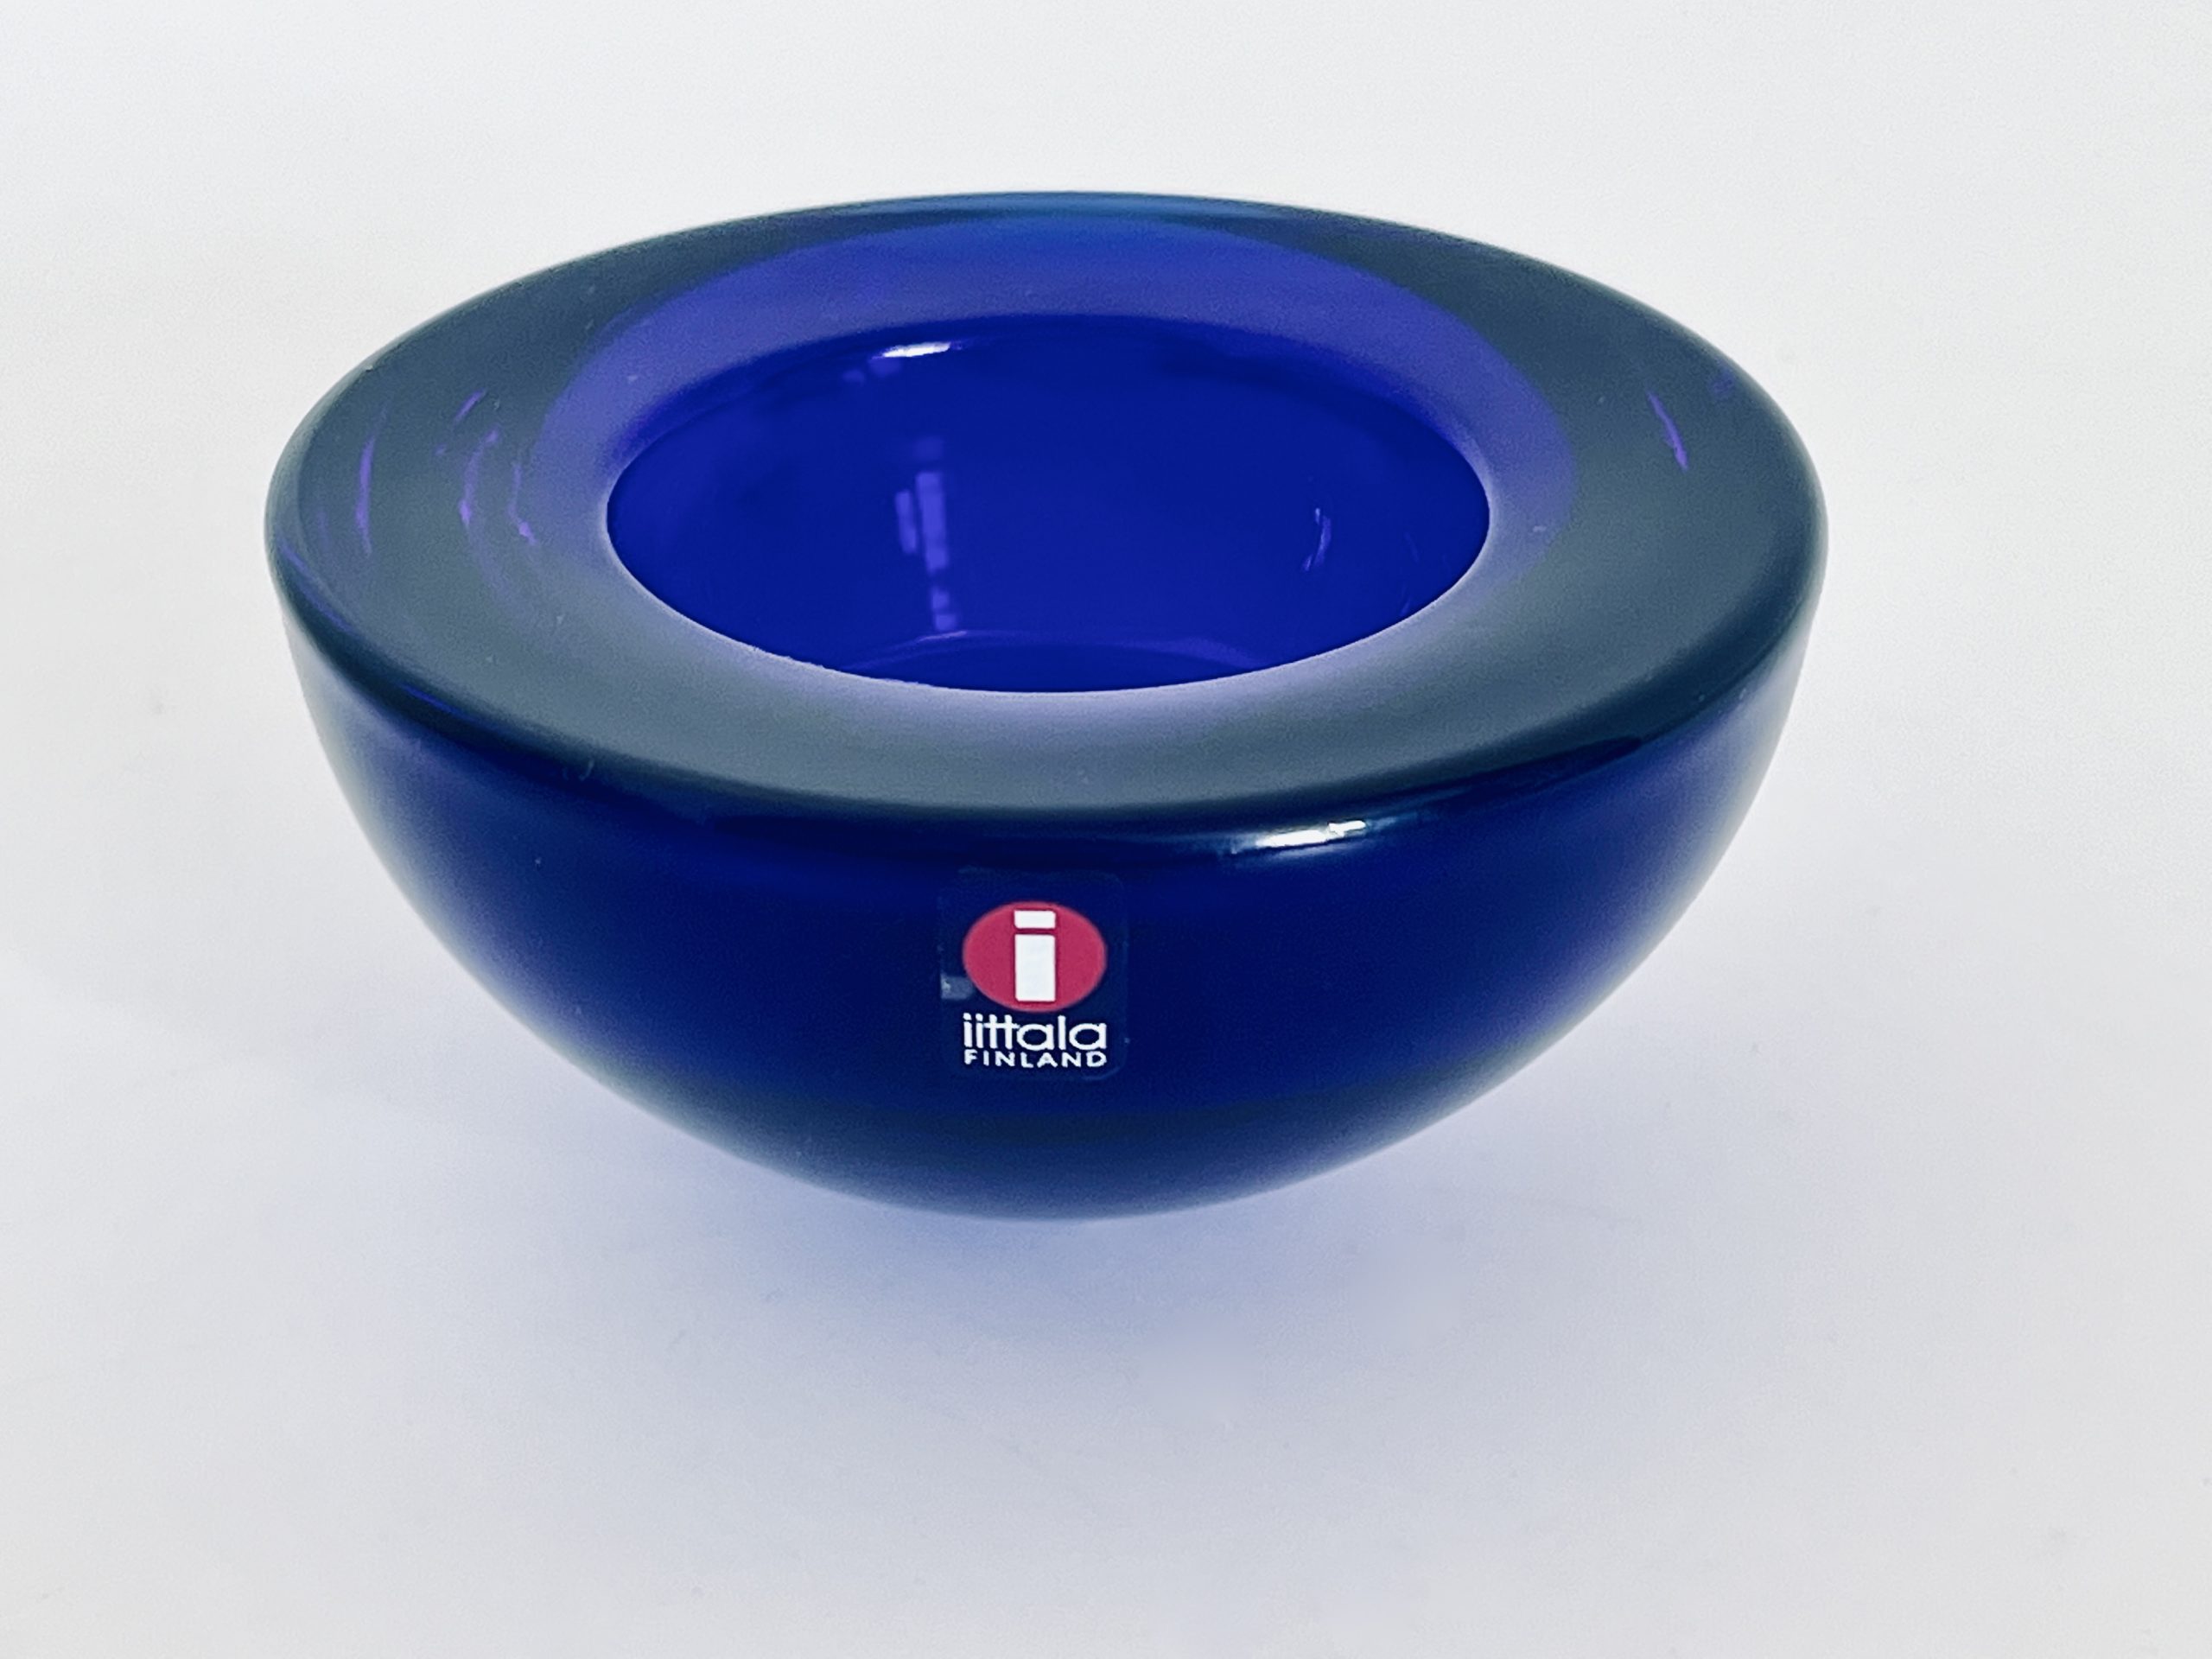 Abbildung des in dieser Anzeige angebotenen Iittala Hello Teelichthalters in der Farbe Kobaltblau.